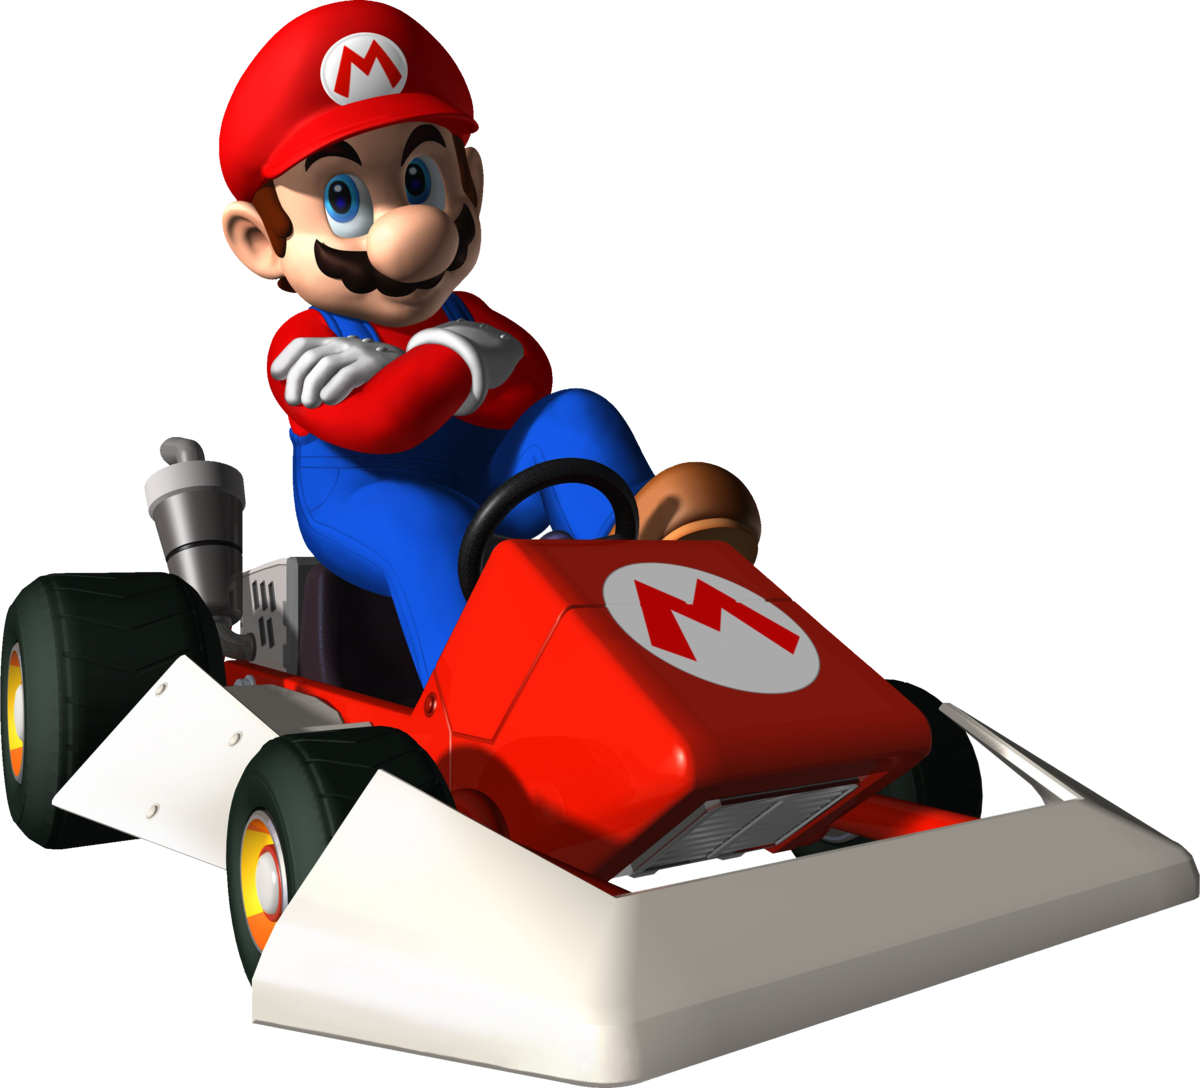 Mario Kart DS - Wikipedia